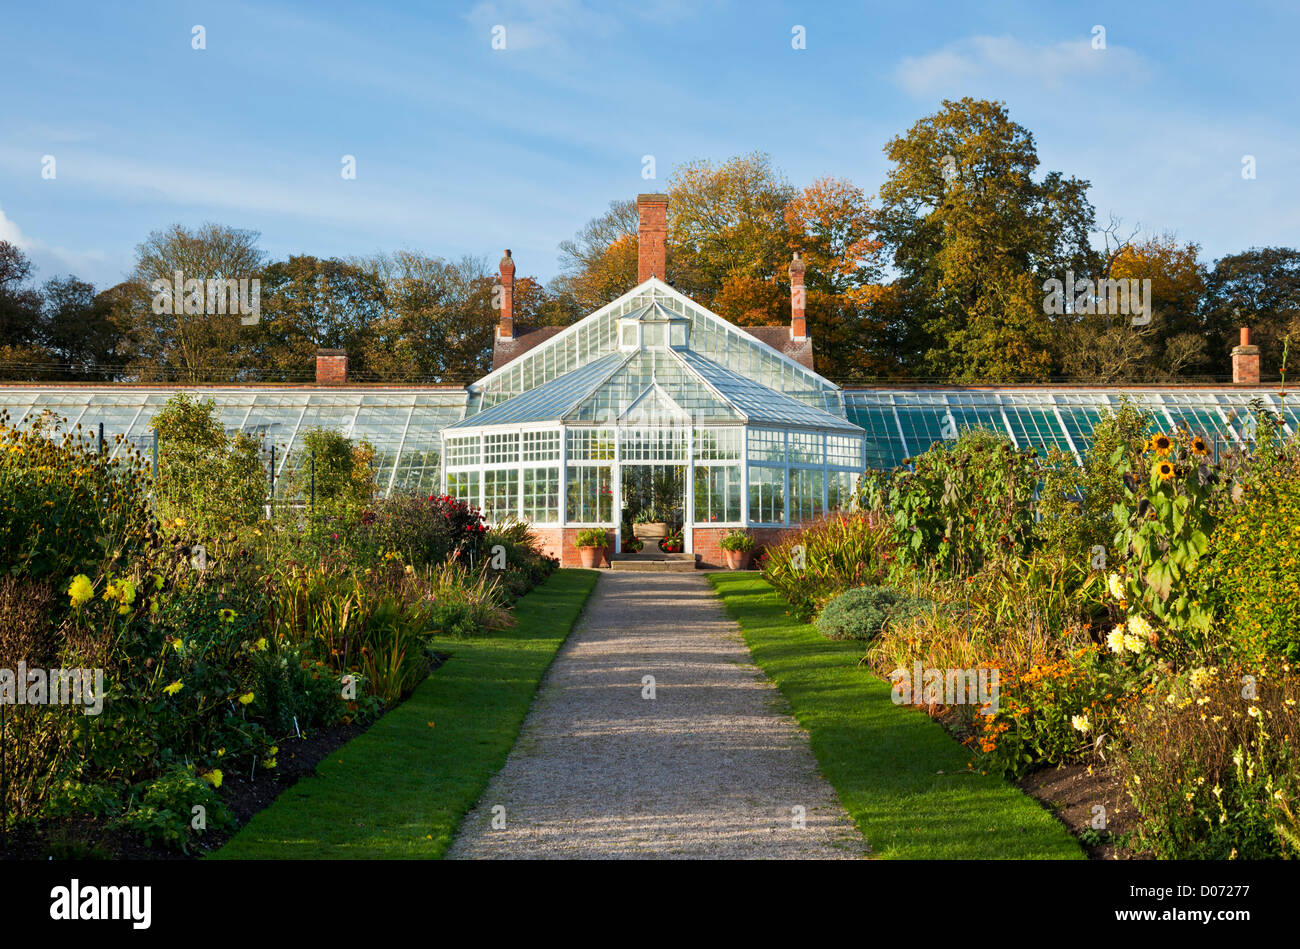 L'immense serre victorienne rénovée dans le jardin clos à Clumber park Norfolk England UK GB EU Europe Banque D'Images